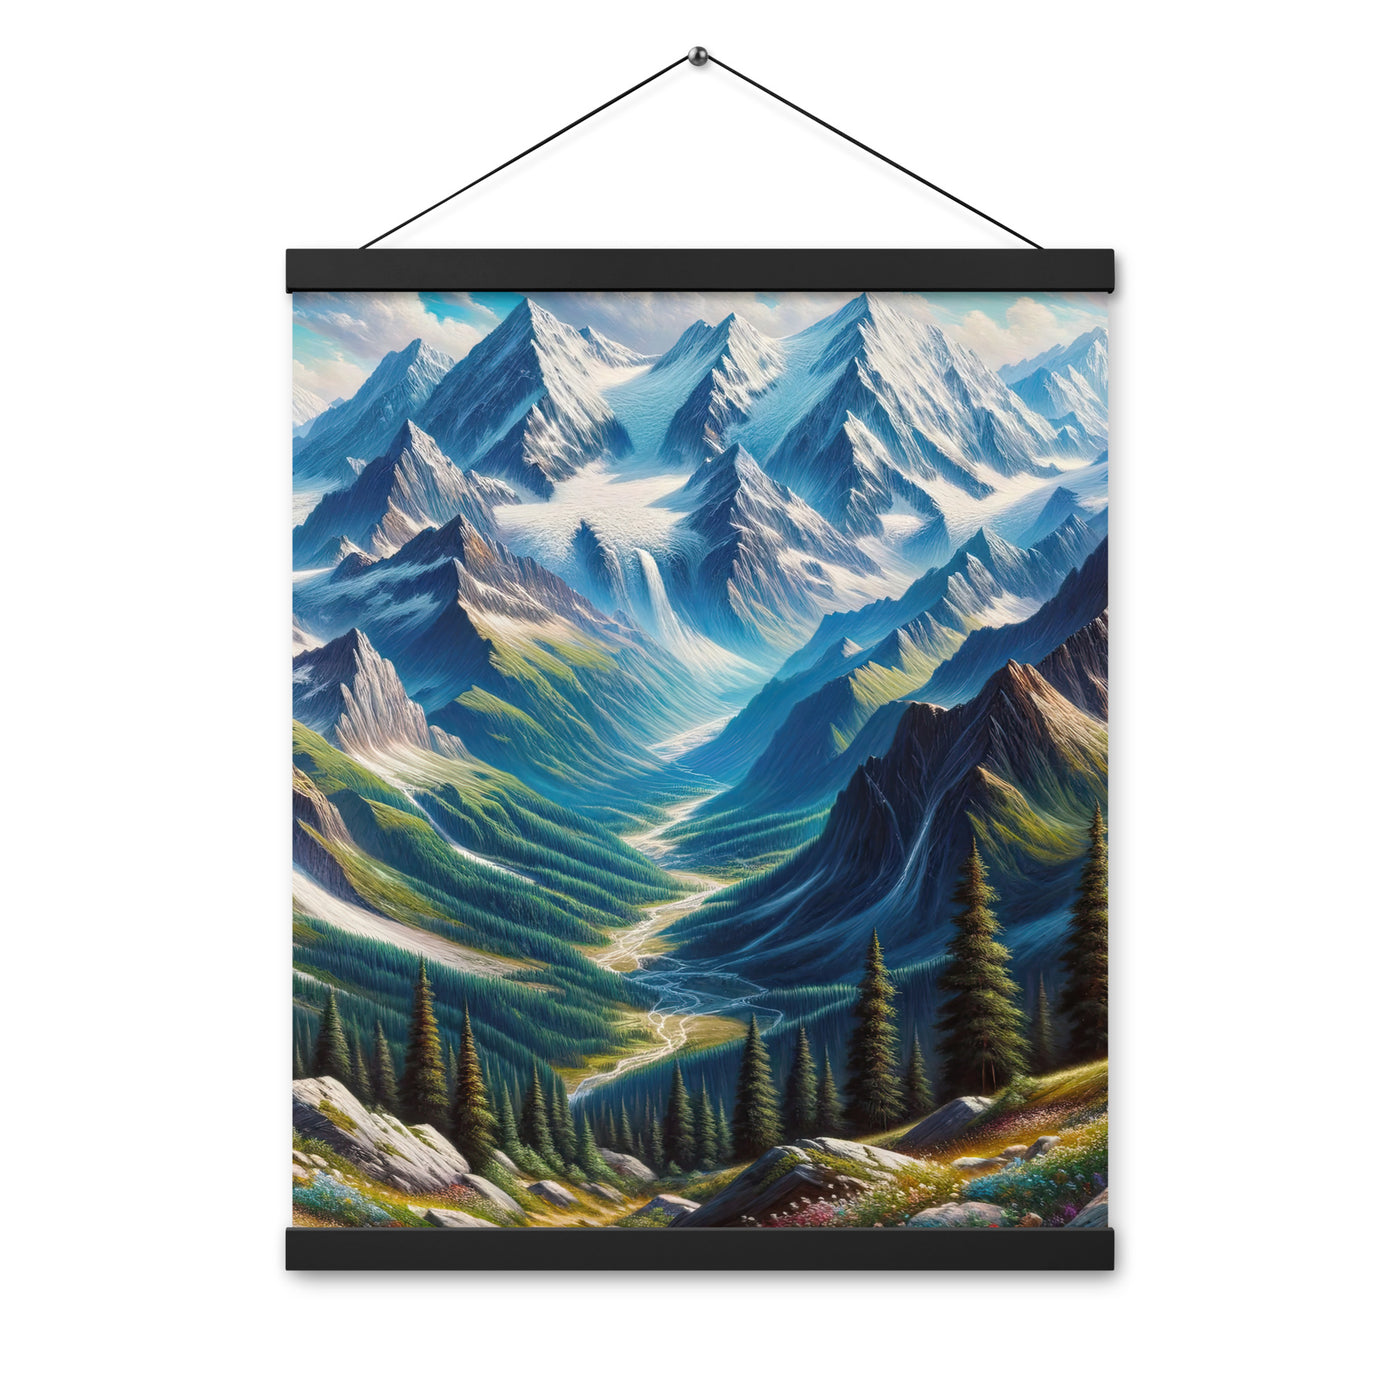 Panorama-Ölgemälde der Alpen mit schneebedeckten Gipfeln und schlängelnden Flusstälern - Premium Poster mit Aufhängung berge xxx yyy zzz 40.6 x 50.8 cm